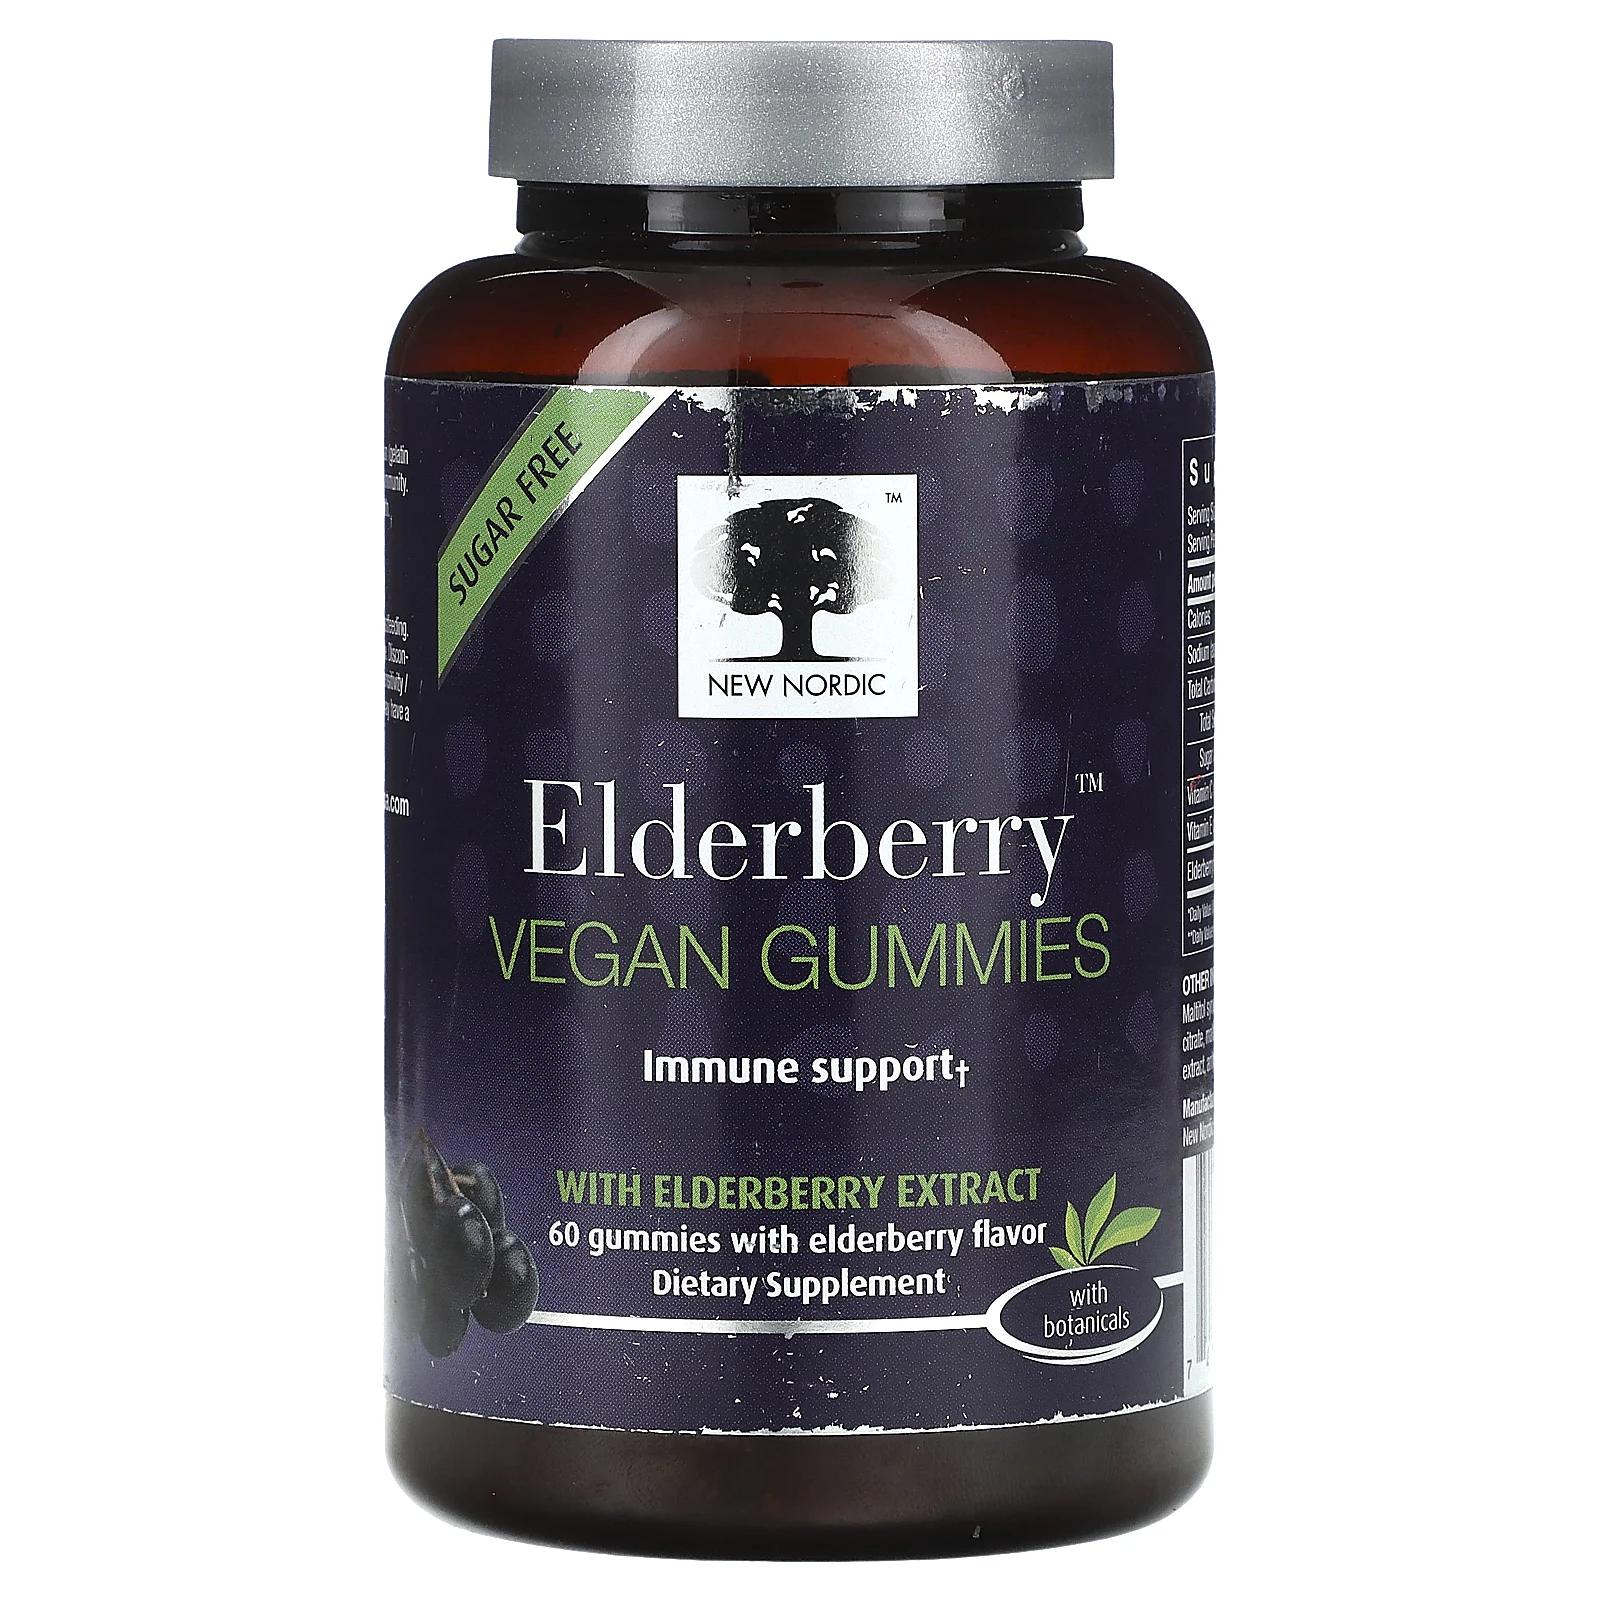 New Nordic Elderberry Vegan Gummies with Elderberry Extract 60 Gummies gaia herbs kids everyday elderberry gummies 40 vegan gummies